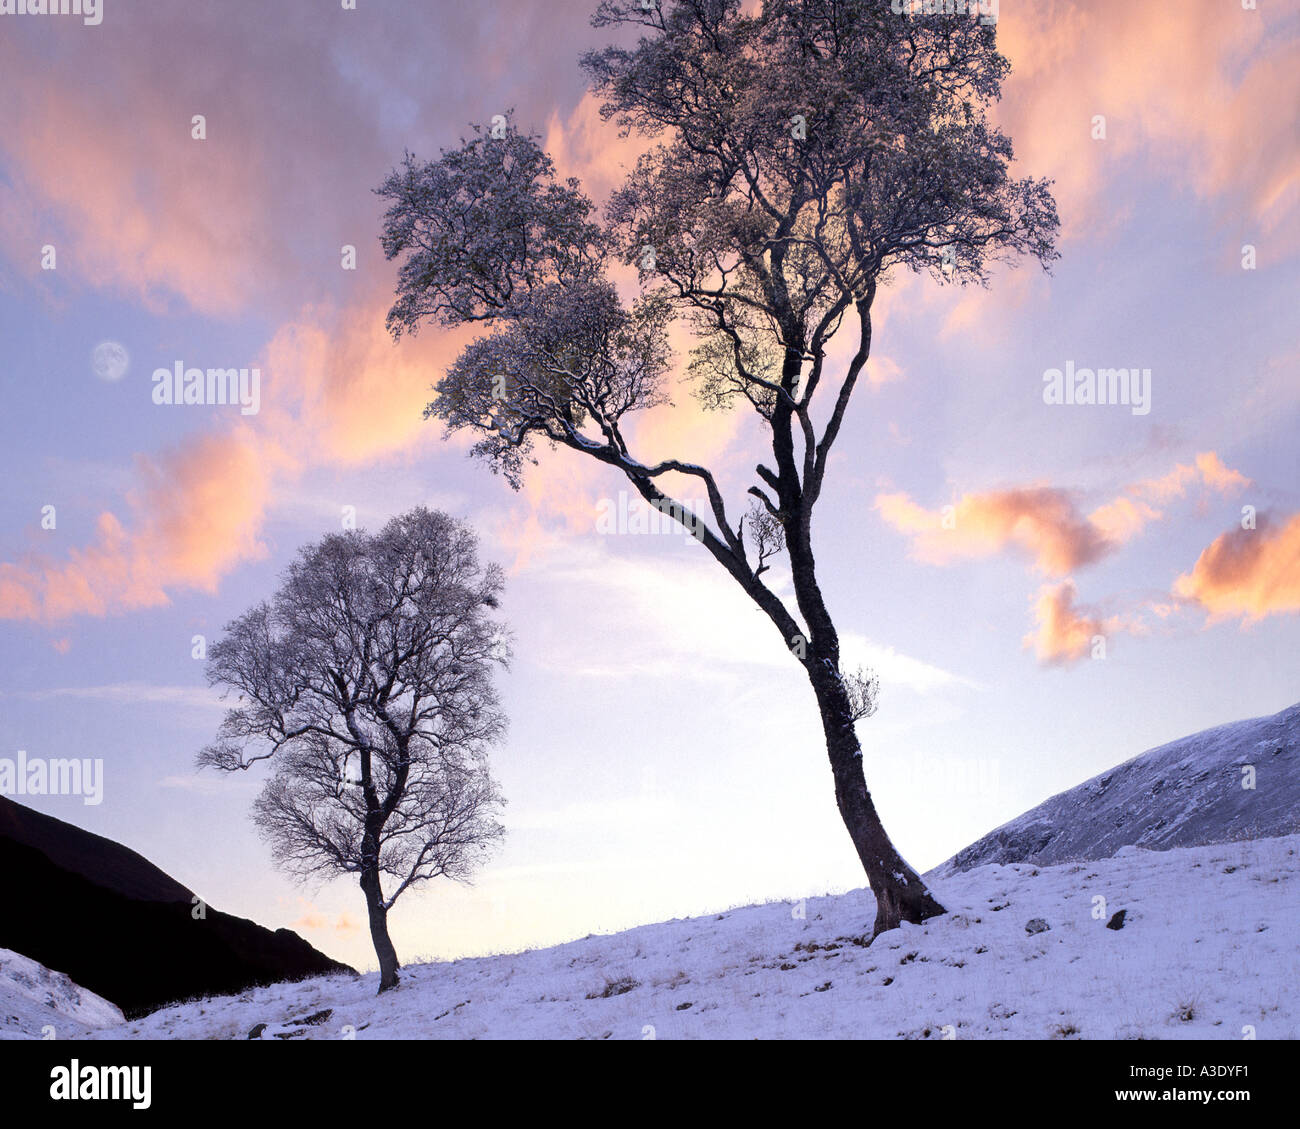 GB - SCOTLAND: Wintertime in Glen Lochsie Stock Photo